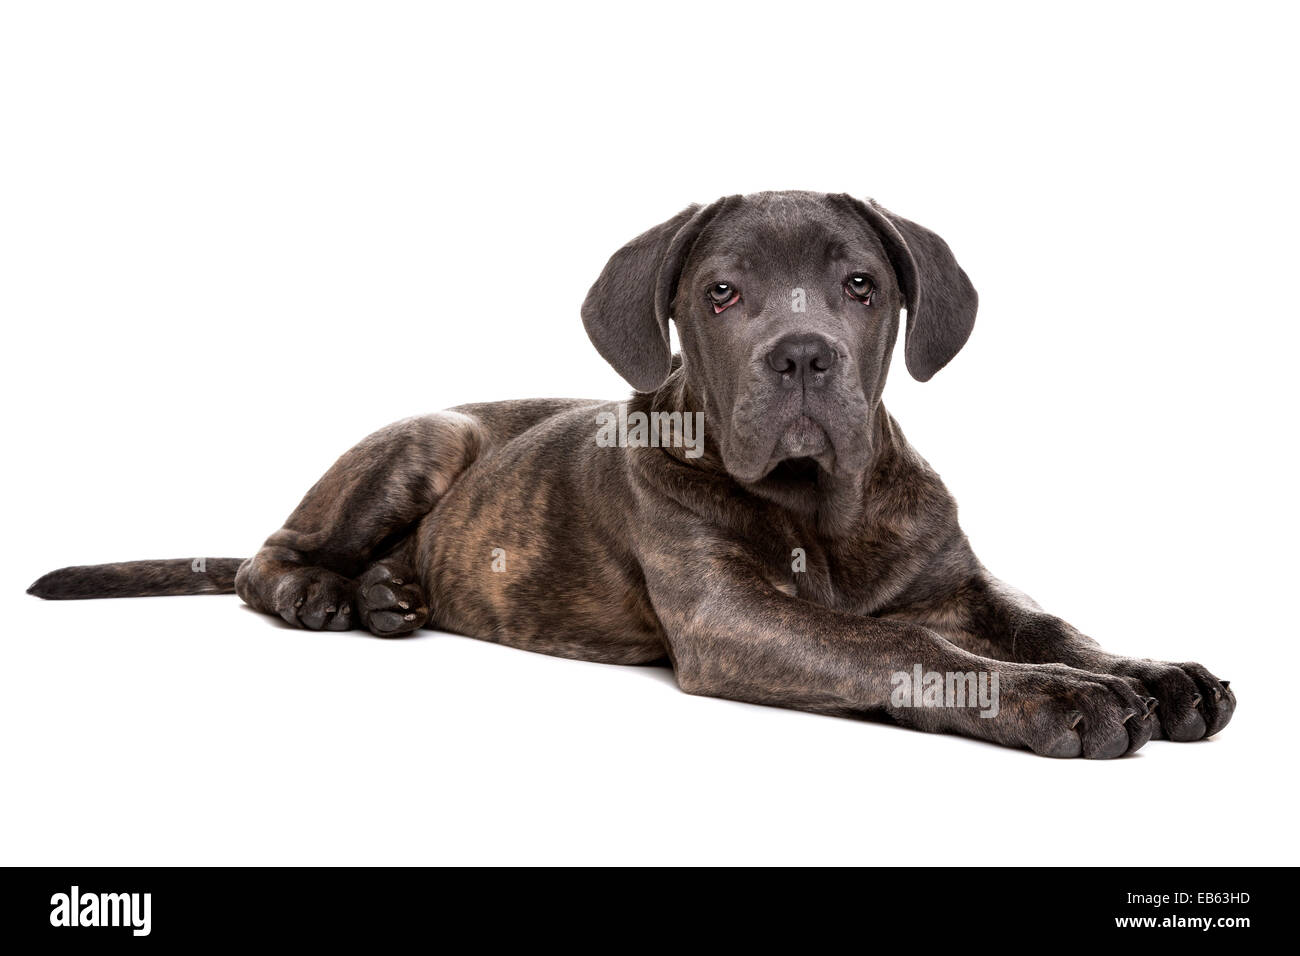 Chien chiot cane corso gris devant un fond blanc Photo Stock - Alamy